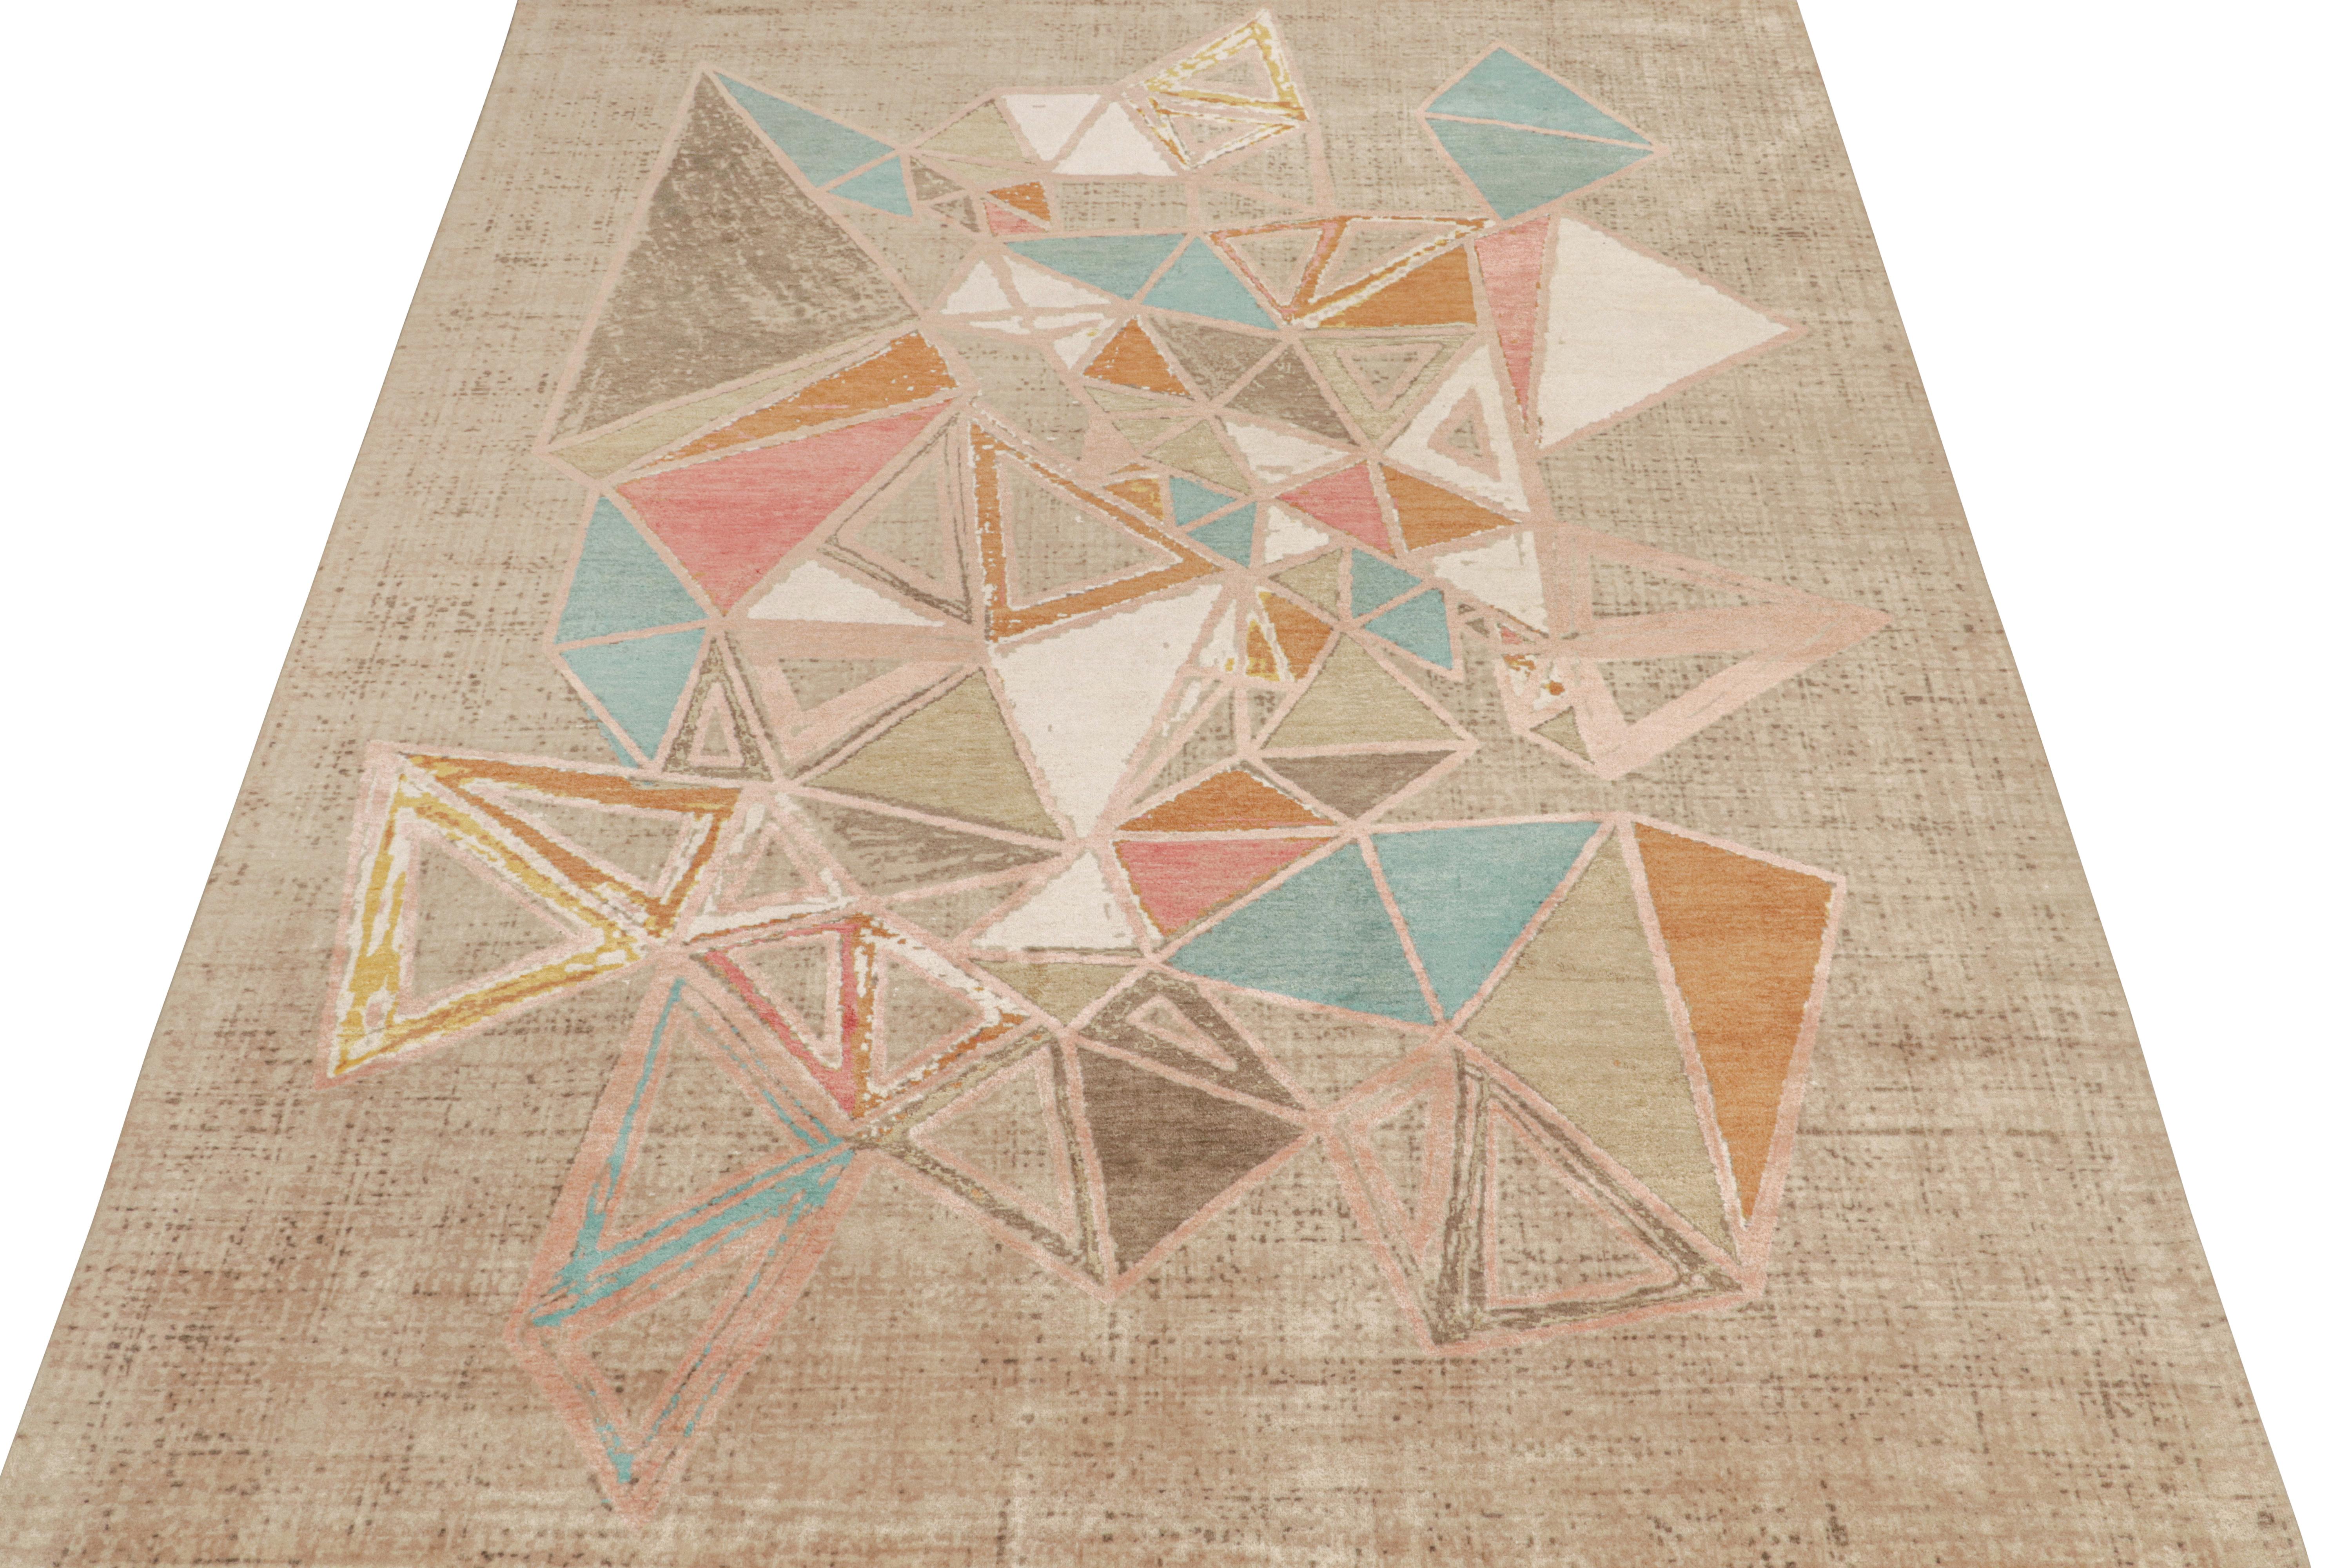 Dieser moderne Teppich im Format 9x12 ist eine aufregende Ergänzung der Mid-Century Modern-Teppichkollektion von Rug & Kilim. Handgeknüpft aus Wolle, Baumwolle und Seide ist es eine kühne Interpretation der postmodernen Ästhetik der 1950er Jahre,